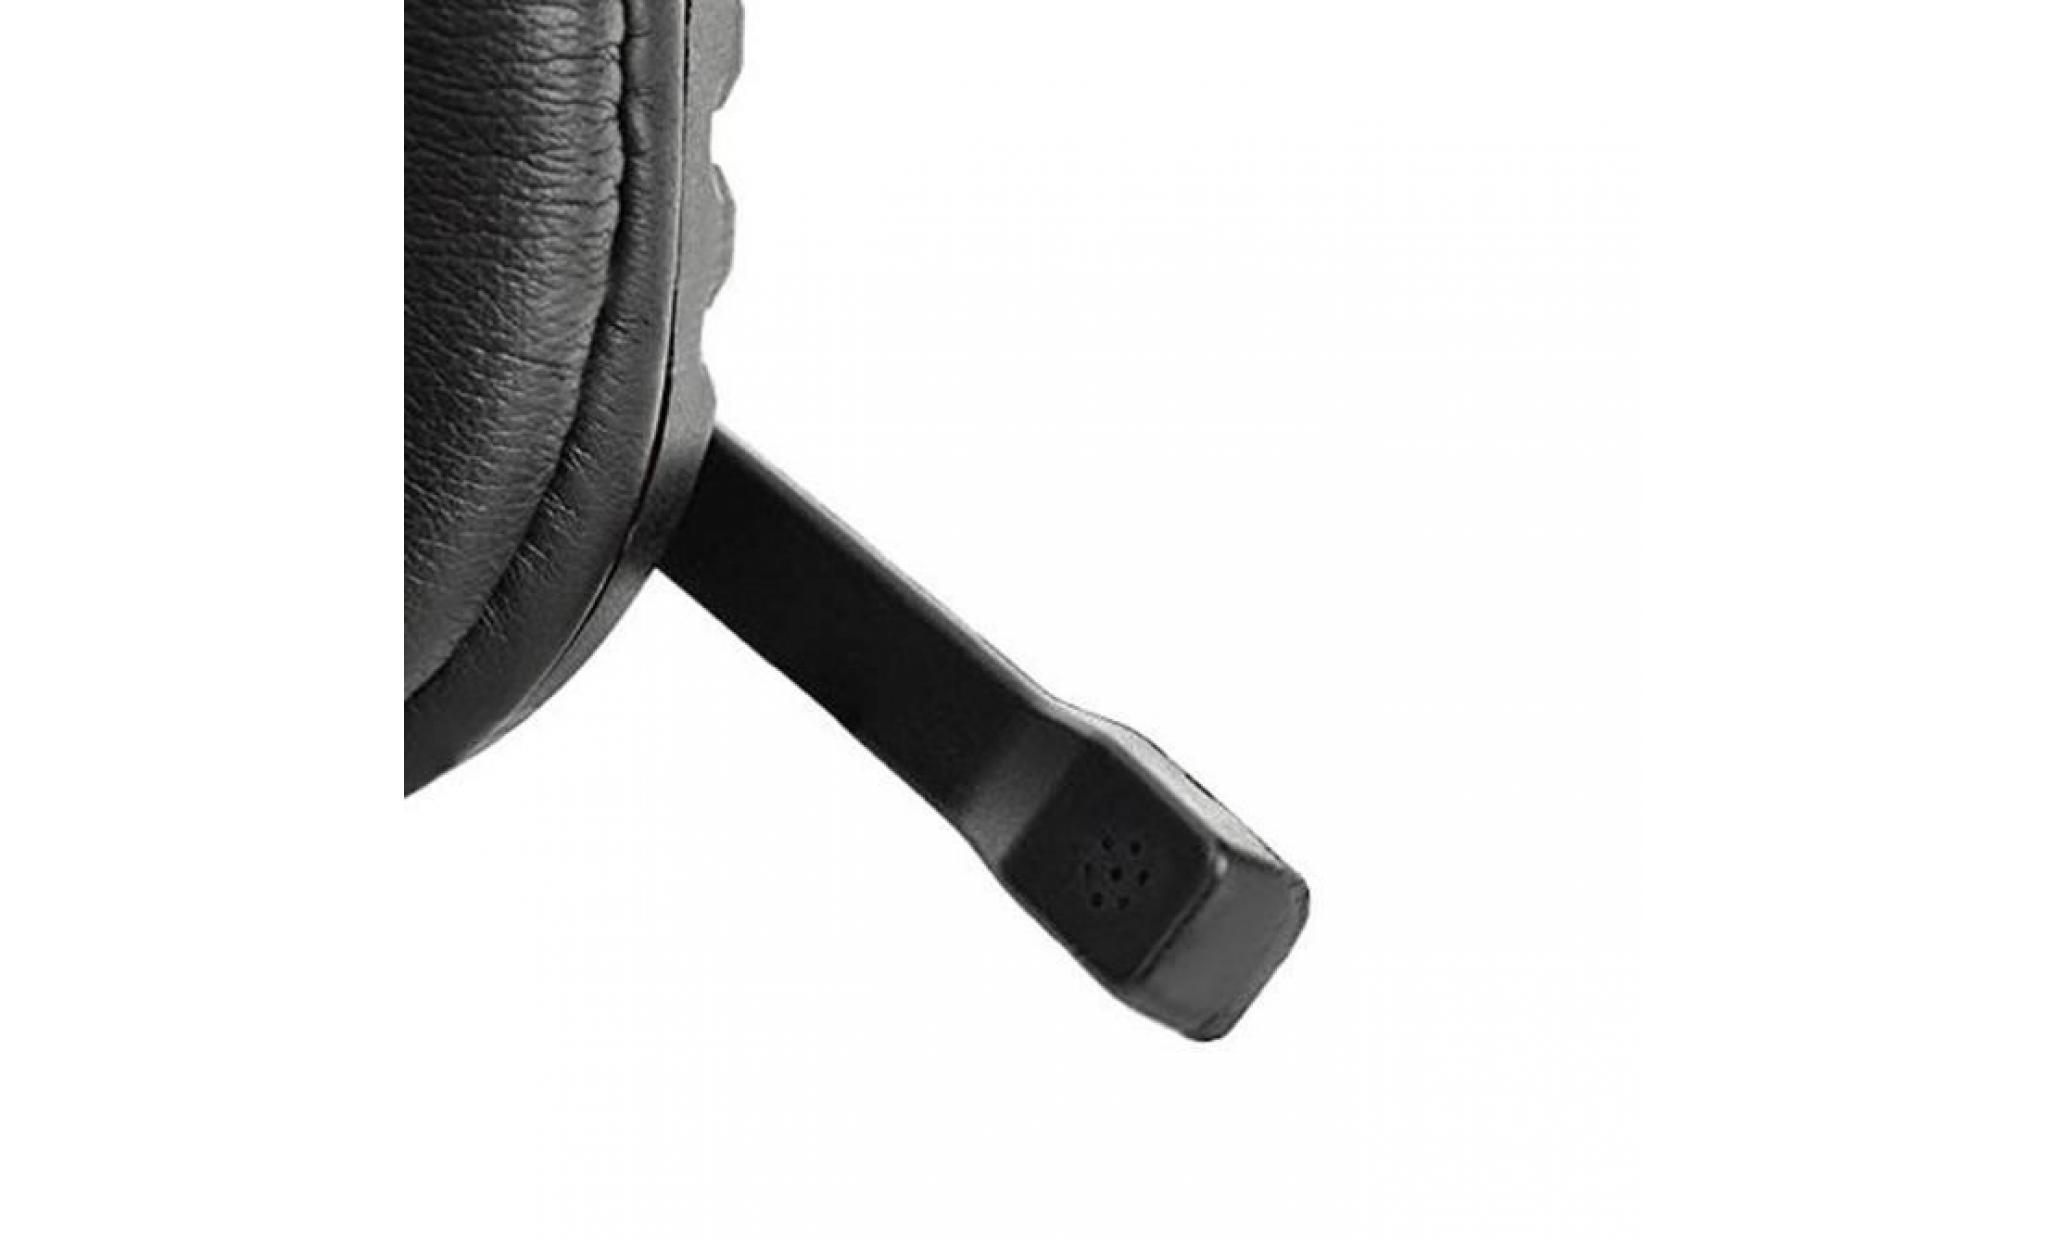 new gaming headset commande vocale filaire hi fi qualité sonore pour ps4 noir + rouge pas cher